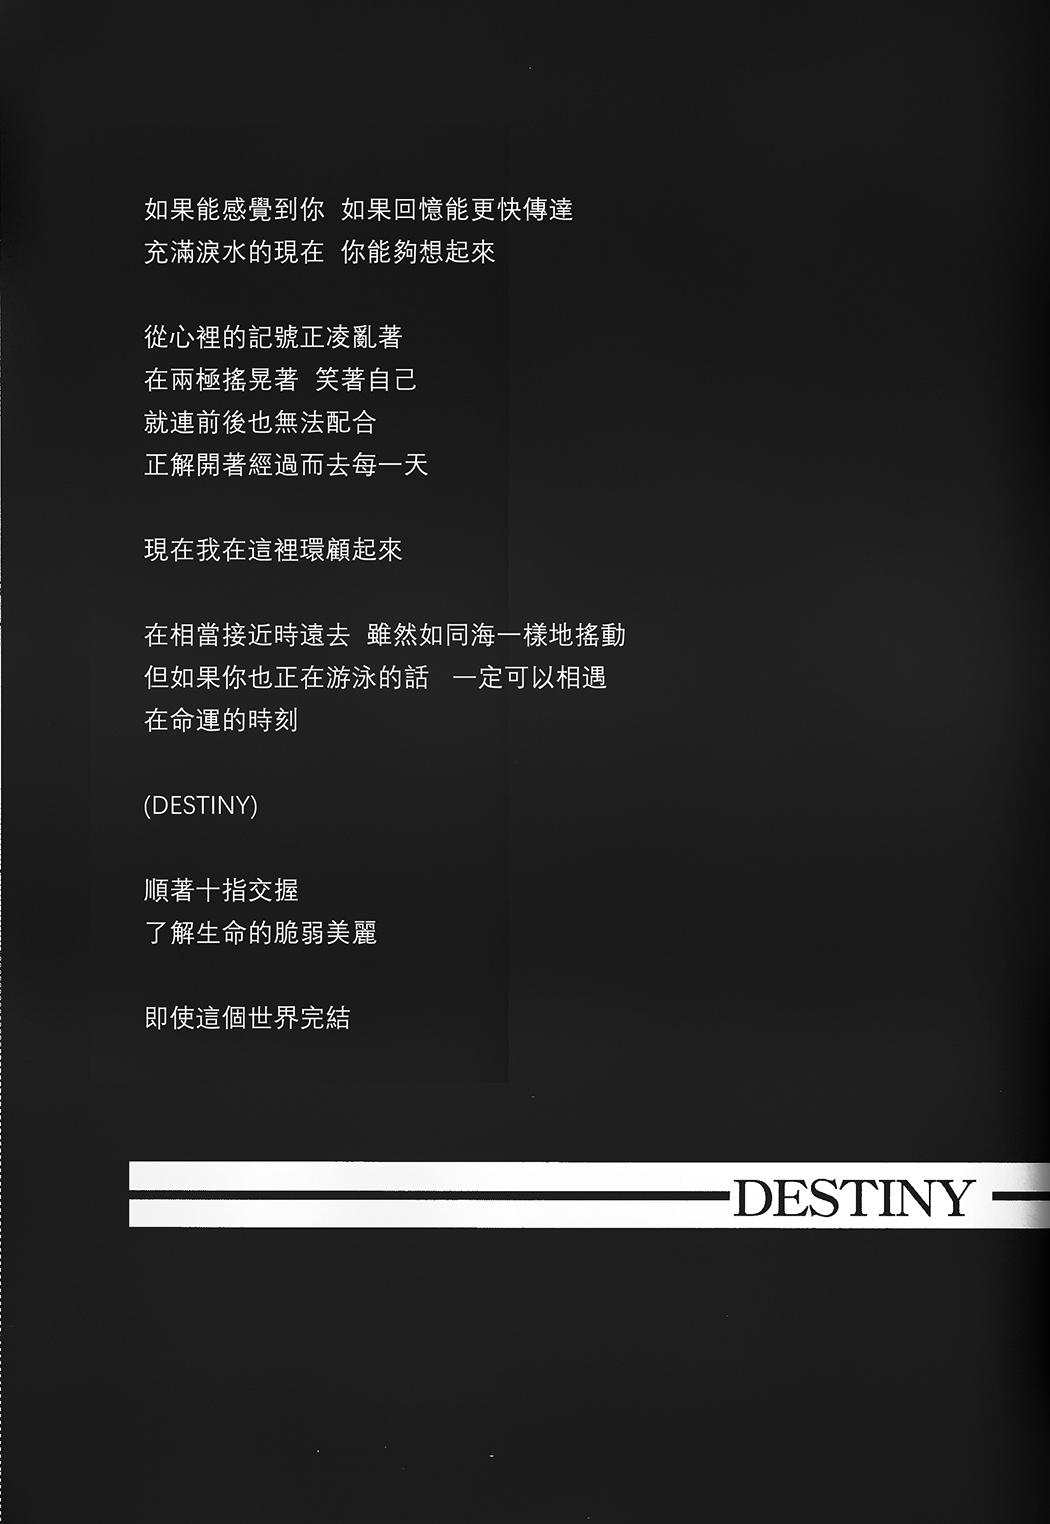 Fall in Destiny 20